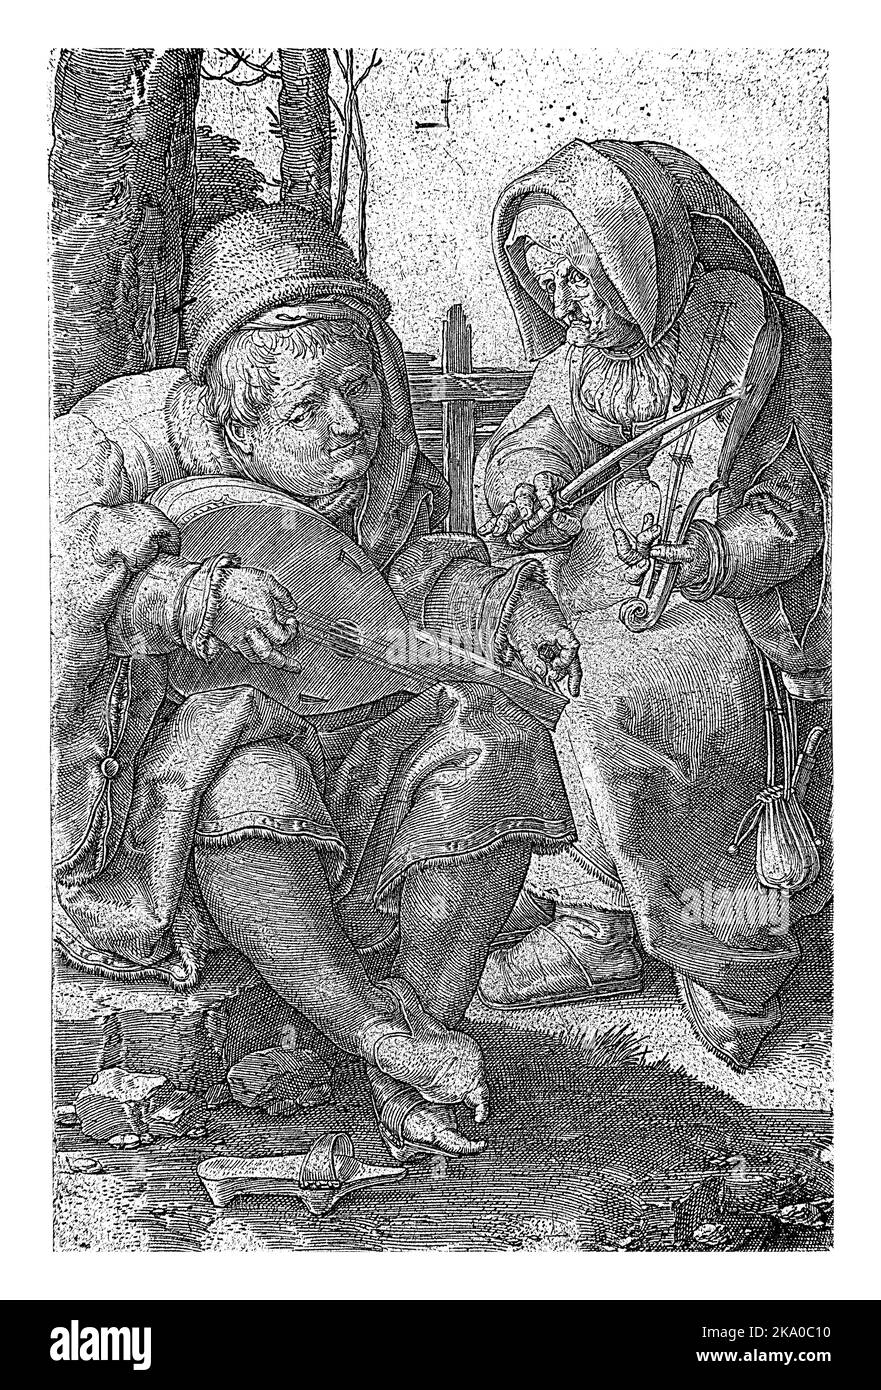 Paar, das Musik macht, Lucas van Leyden, 1524 der Mann stimmt eine Laute, er hat eine Sandale abgenommen. Die alte Frau spielt eine Geige. Stockfoto